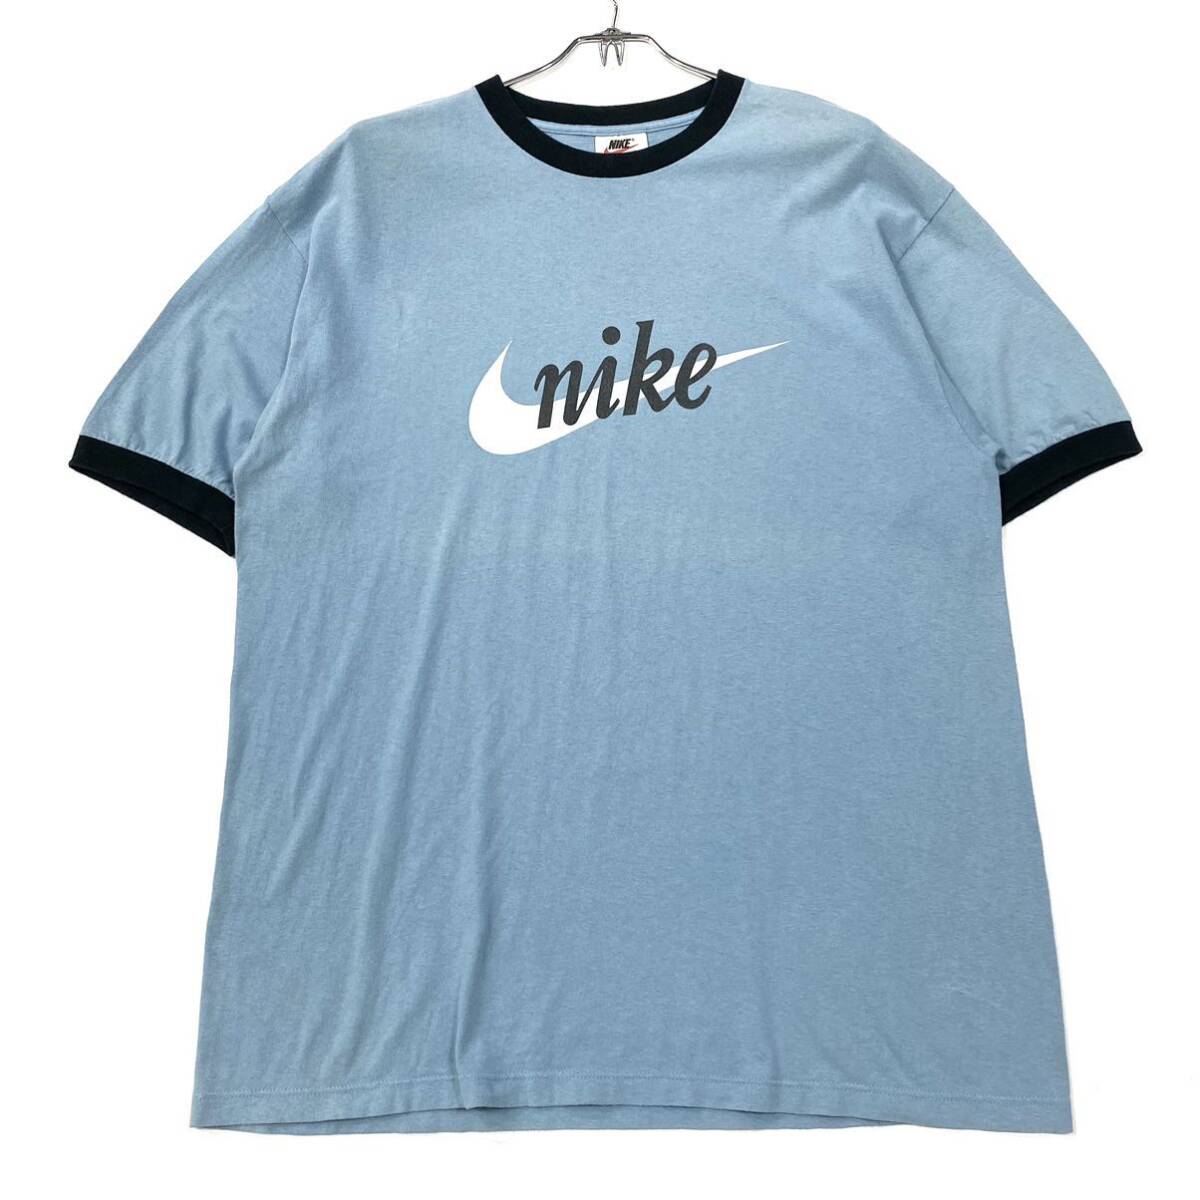 USA製 NIKE/ナイキ リンガーネックTシャツ メンズL ライトブルー/ネイビー_画像1